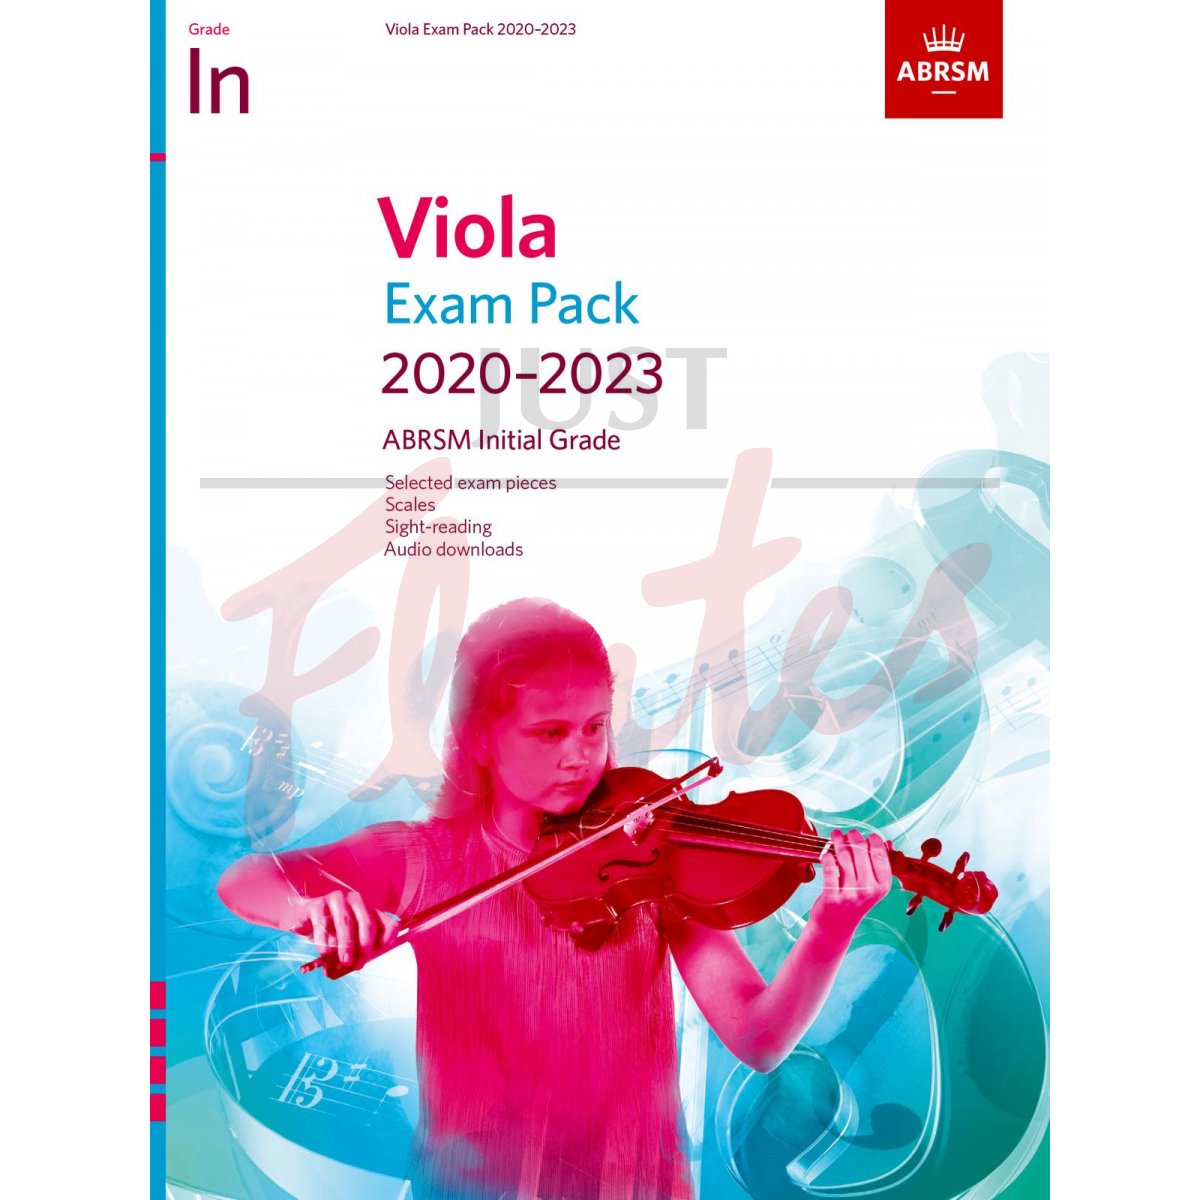 Viola Exam Pack 2020-2023, Initial